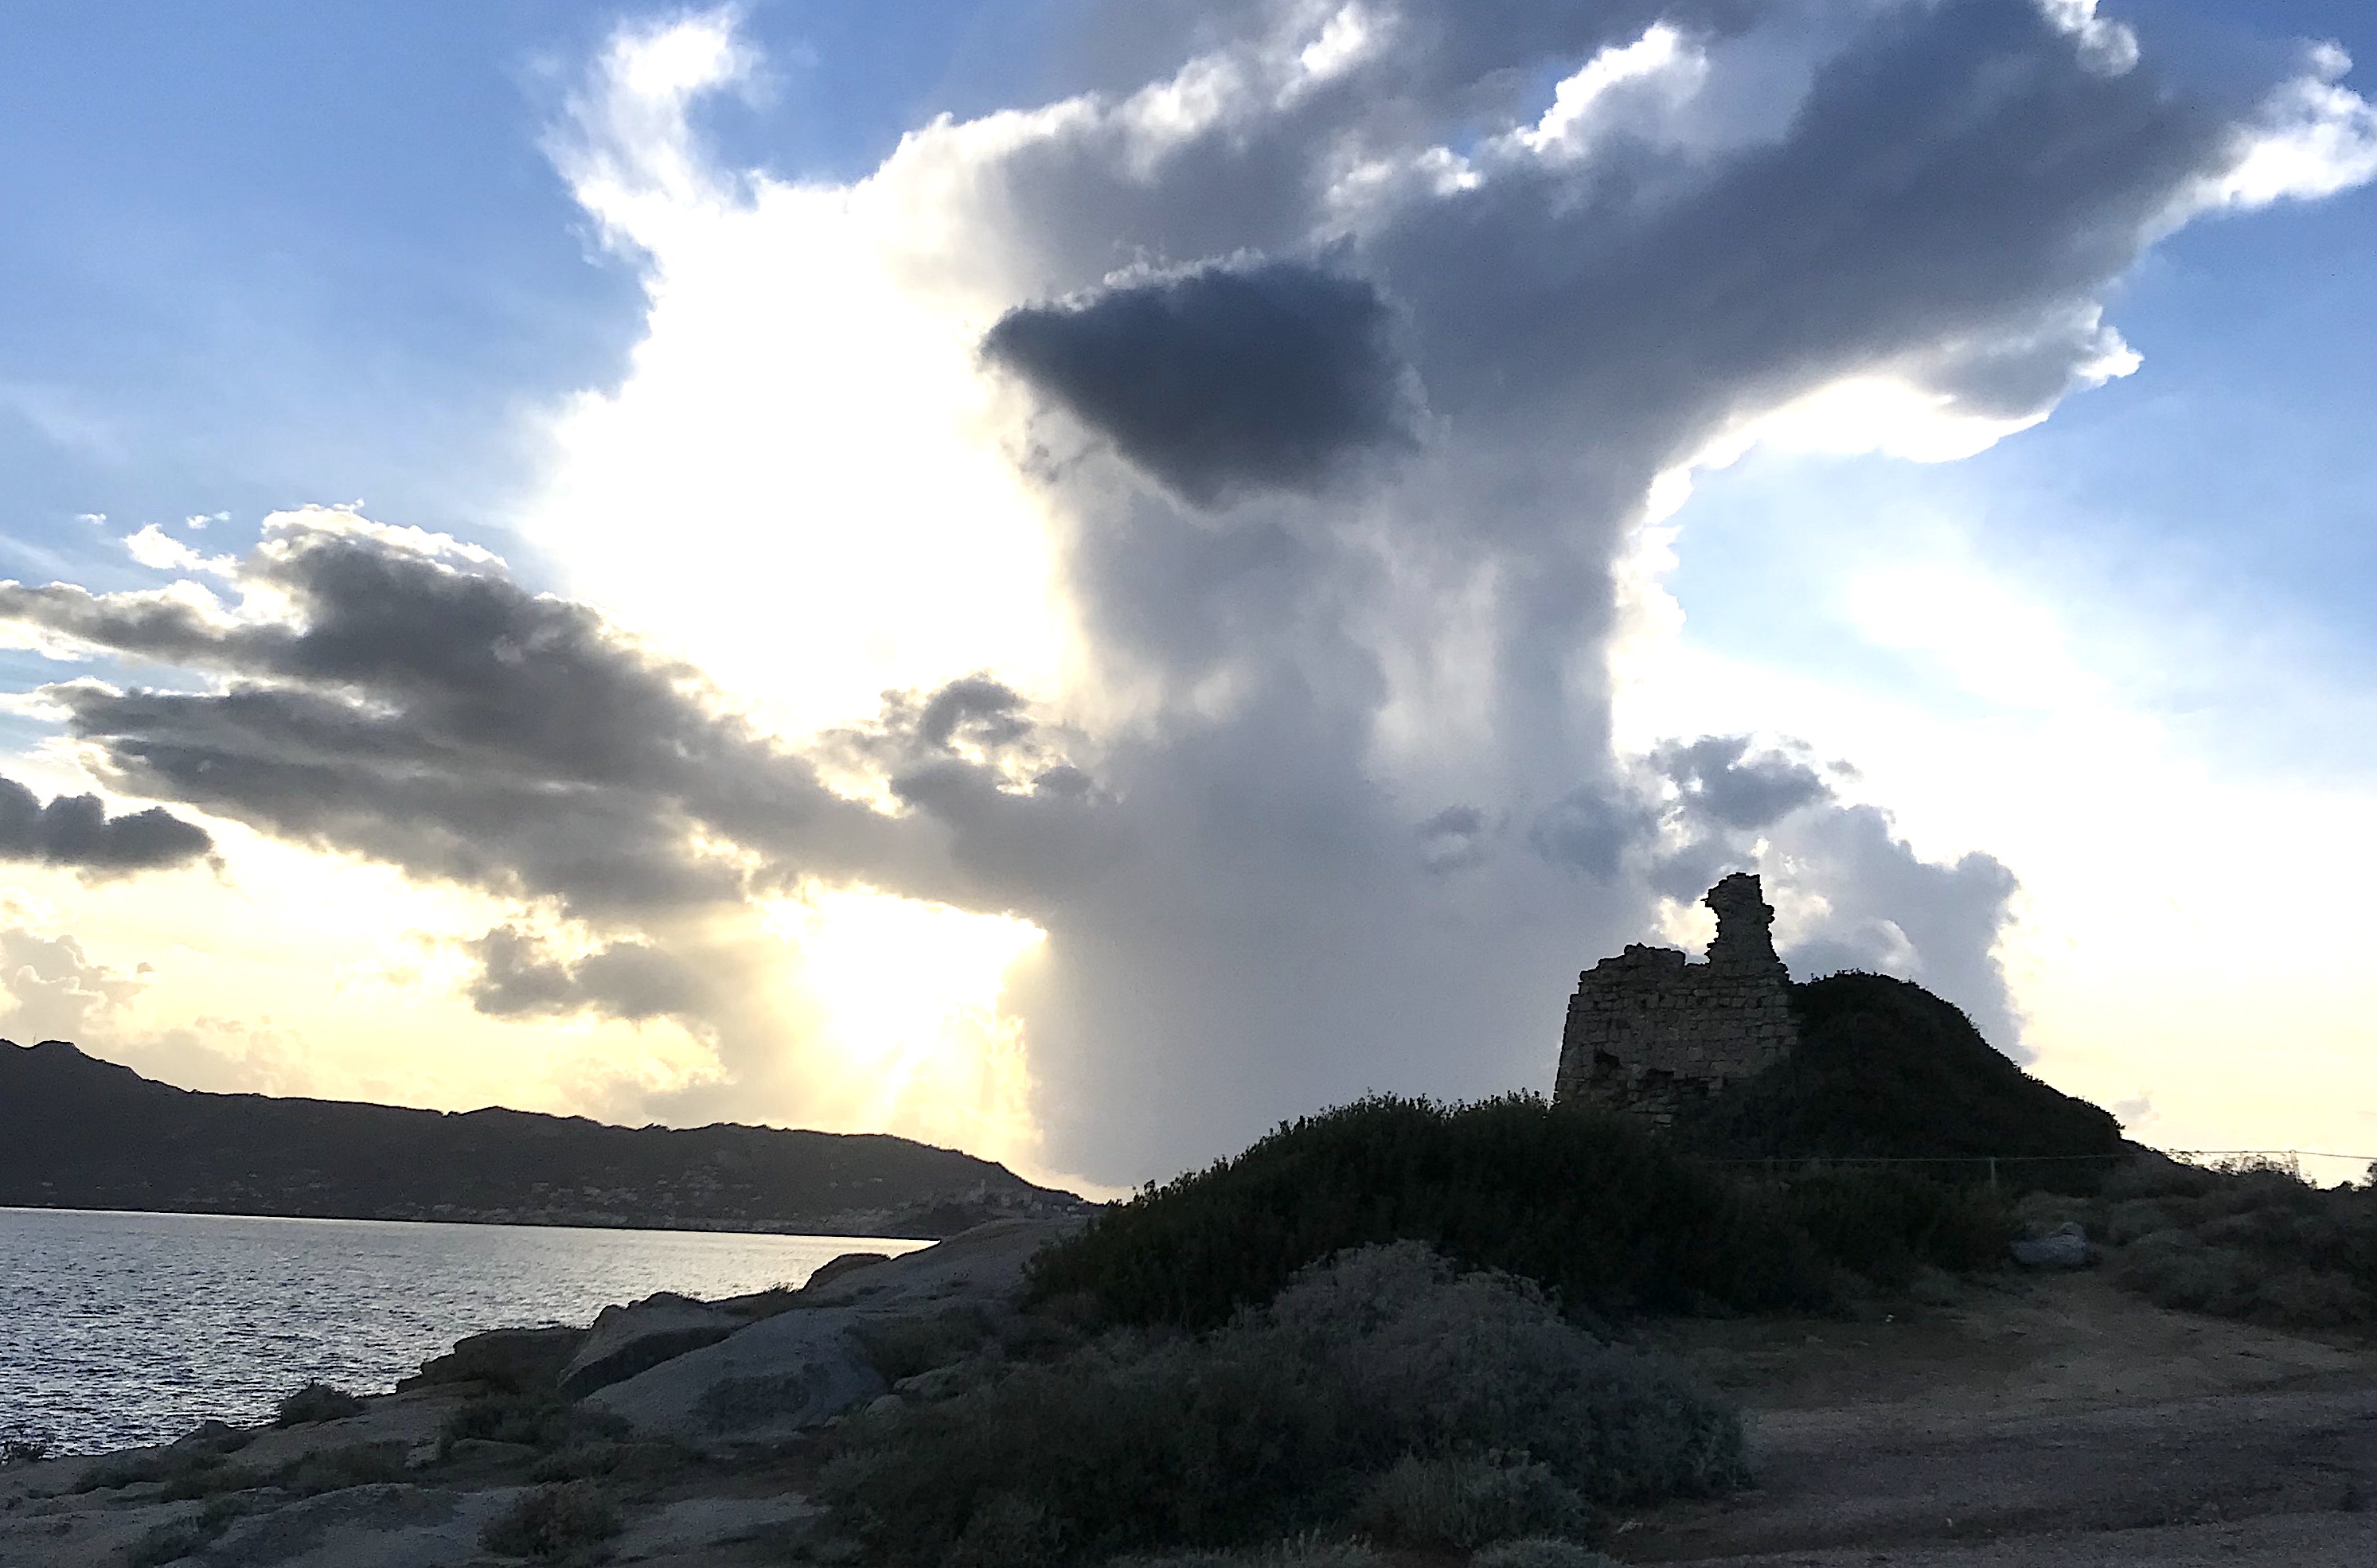 La photo du jour : Nuage d'orage au-dessus de la tour de Caldanu